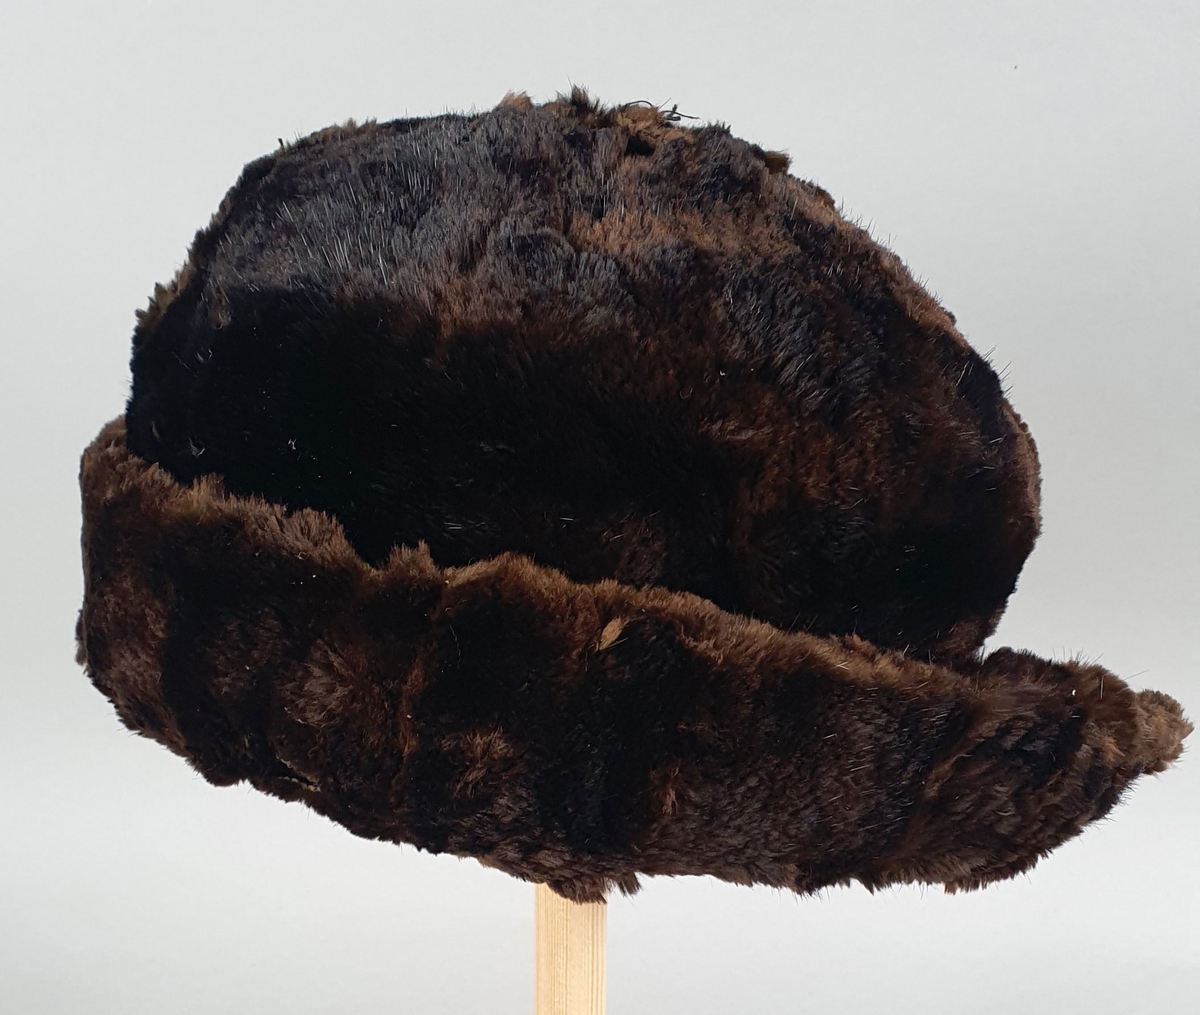 Mørkebrun hatt av pels (mink?), fôret med mørkebrun bomull. Brem som brettes opp langs pullen, med en splitt midt bak. Skinnet er revnet på flere steder.